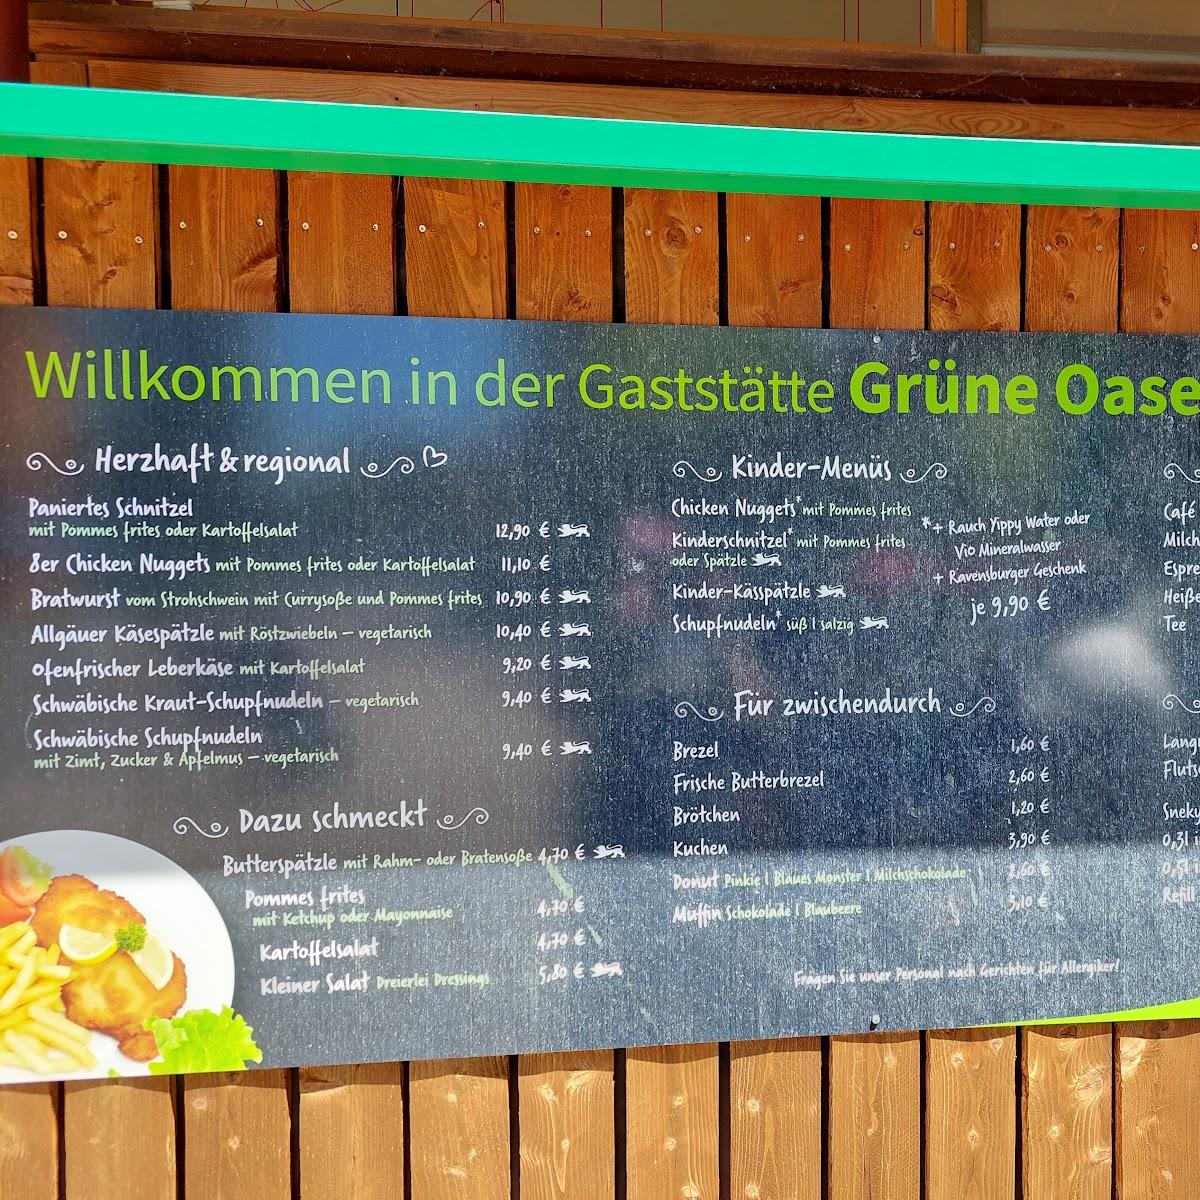 Restaurant "Gaststätte Grüne Oase" in Meckenbeuren